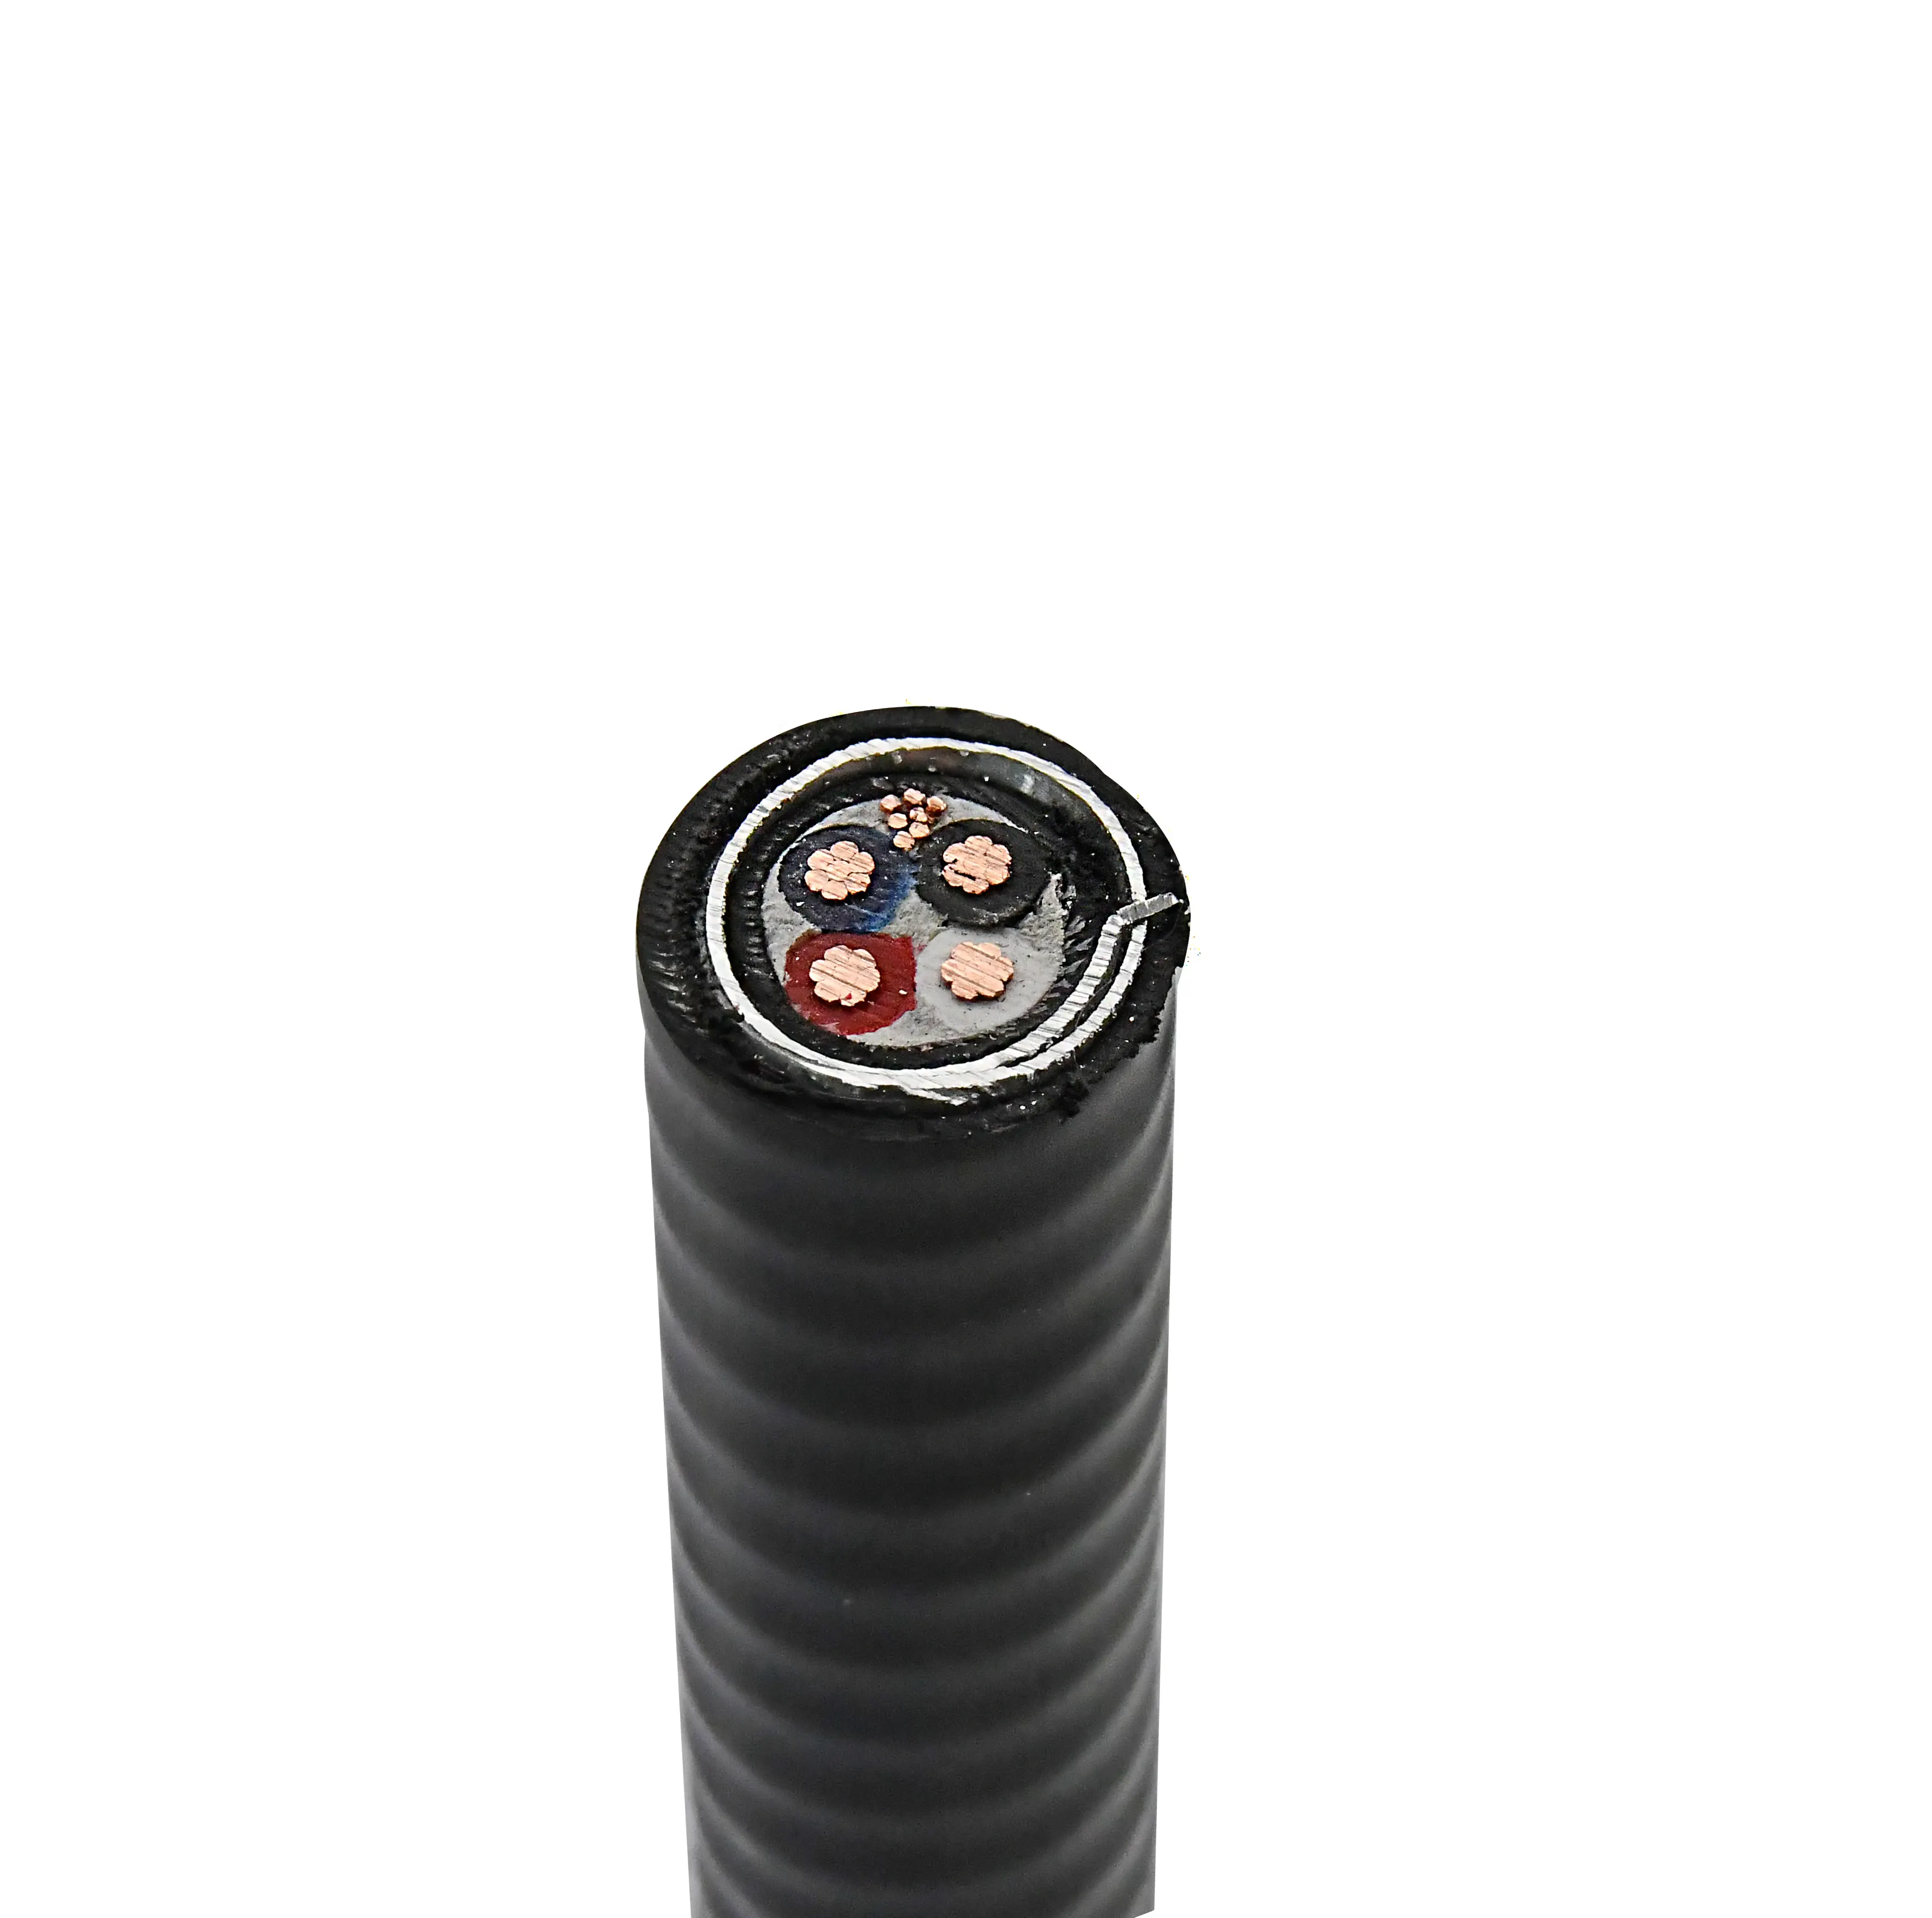 600V UL tipi Mc 3 iletken bakır XLPE yalıtım PVC ceket alüminyum kilitli zırh kablosu